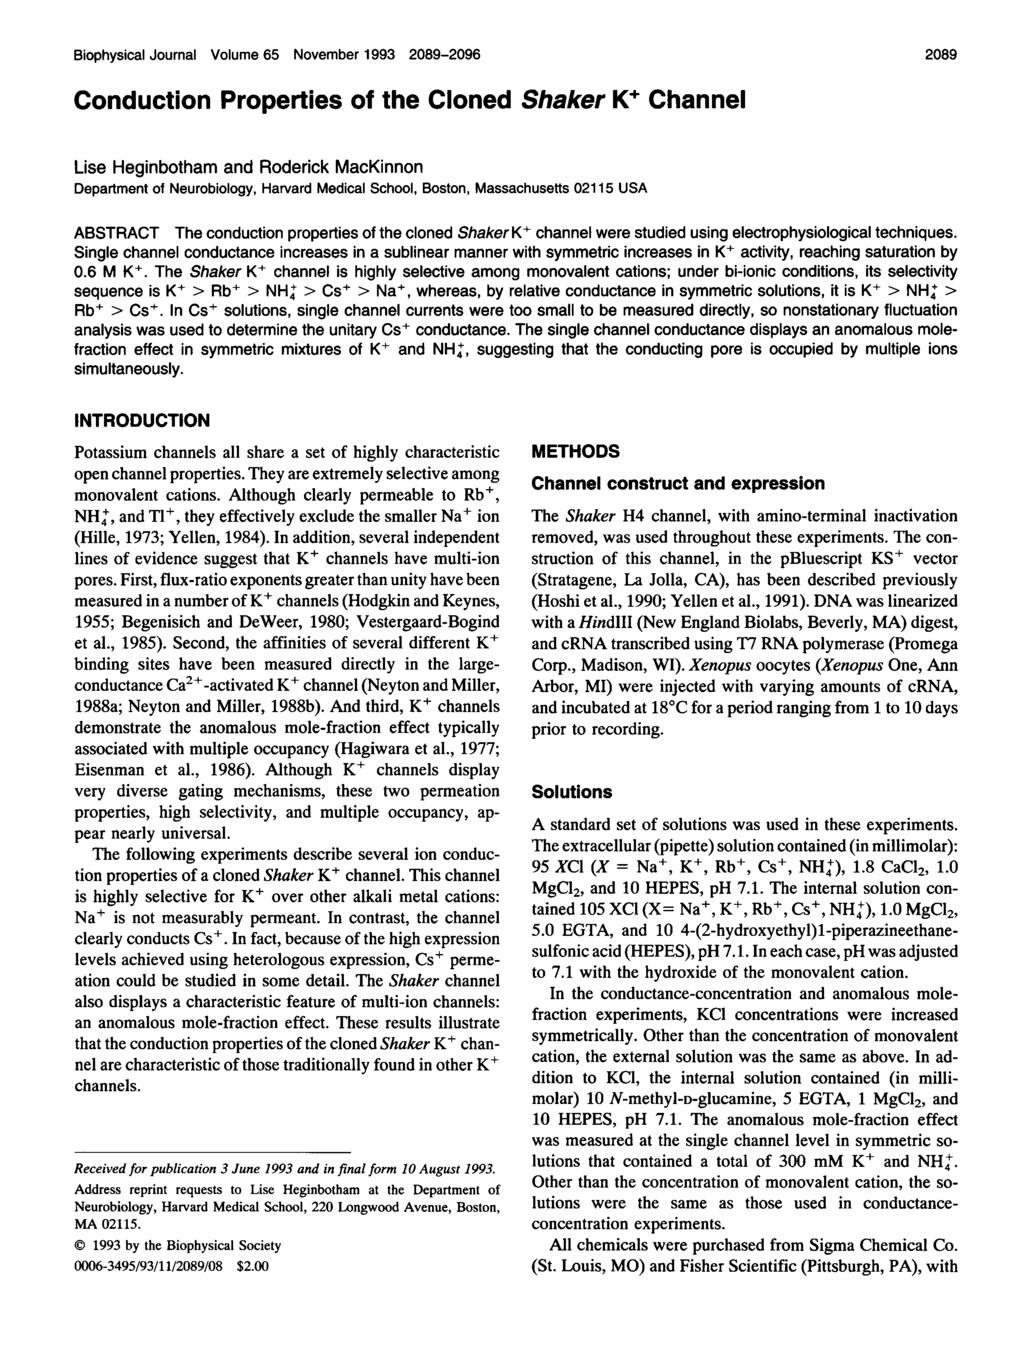 Biophysial Journal Volume 65 November 1993 89-96 Condution Properties of the Cloned Shaker K+ Channel 89 Lise Heginbotham and Roderik MaKinnon Department of Neurobiology, Harvard Medial Shool,